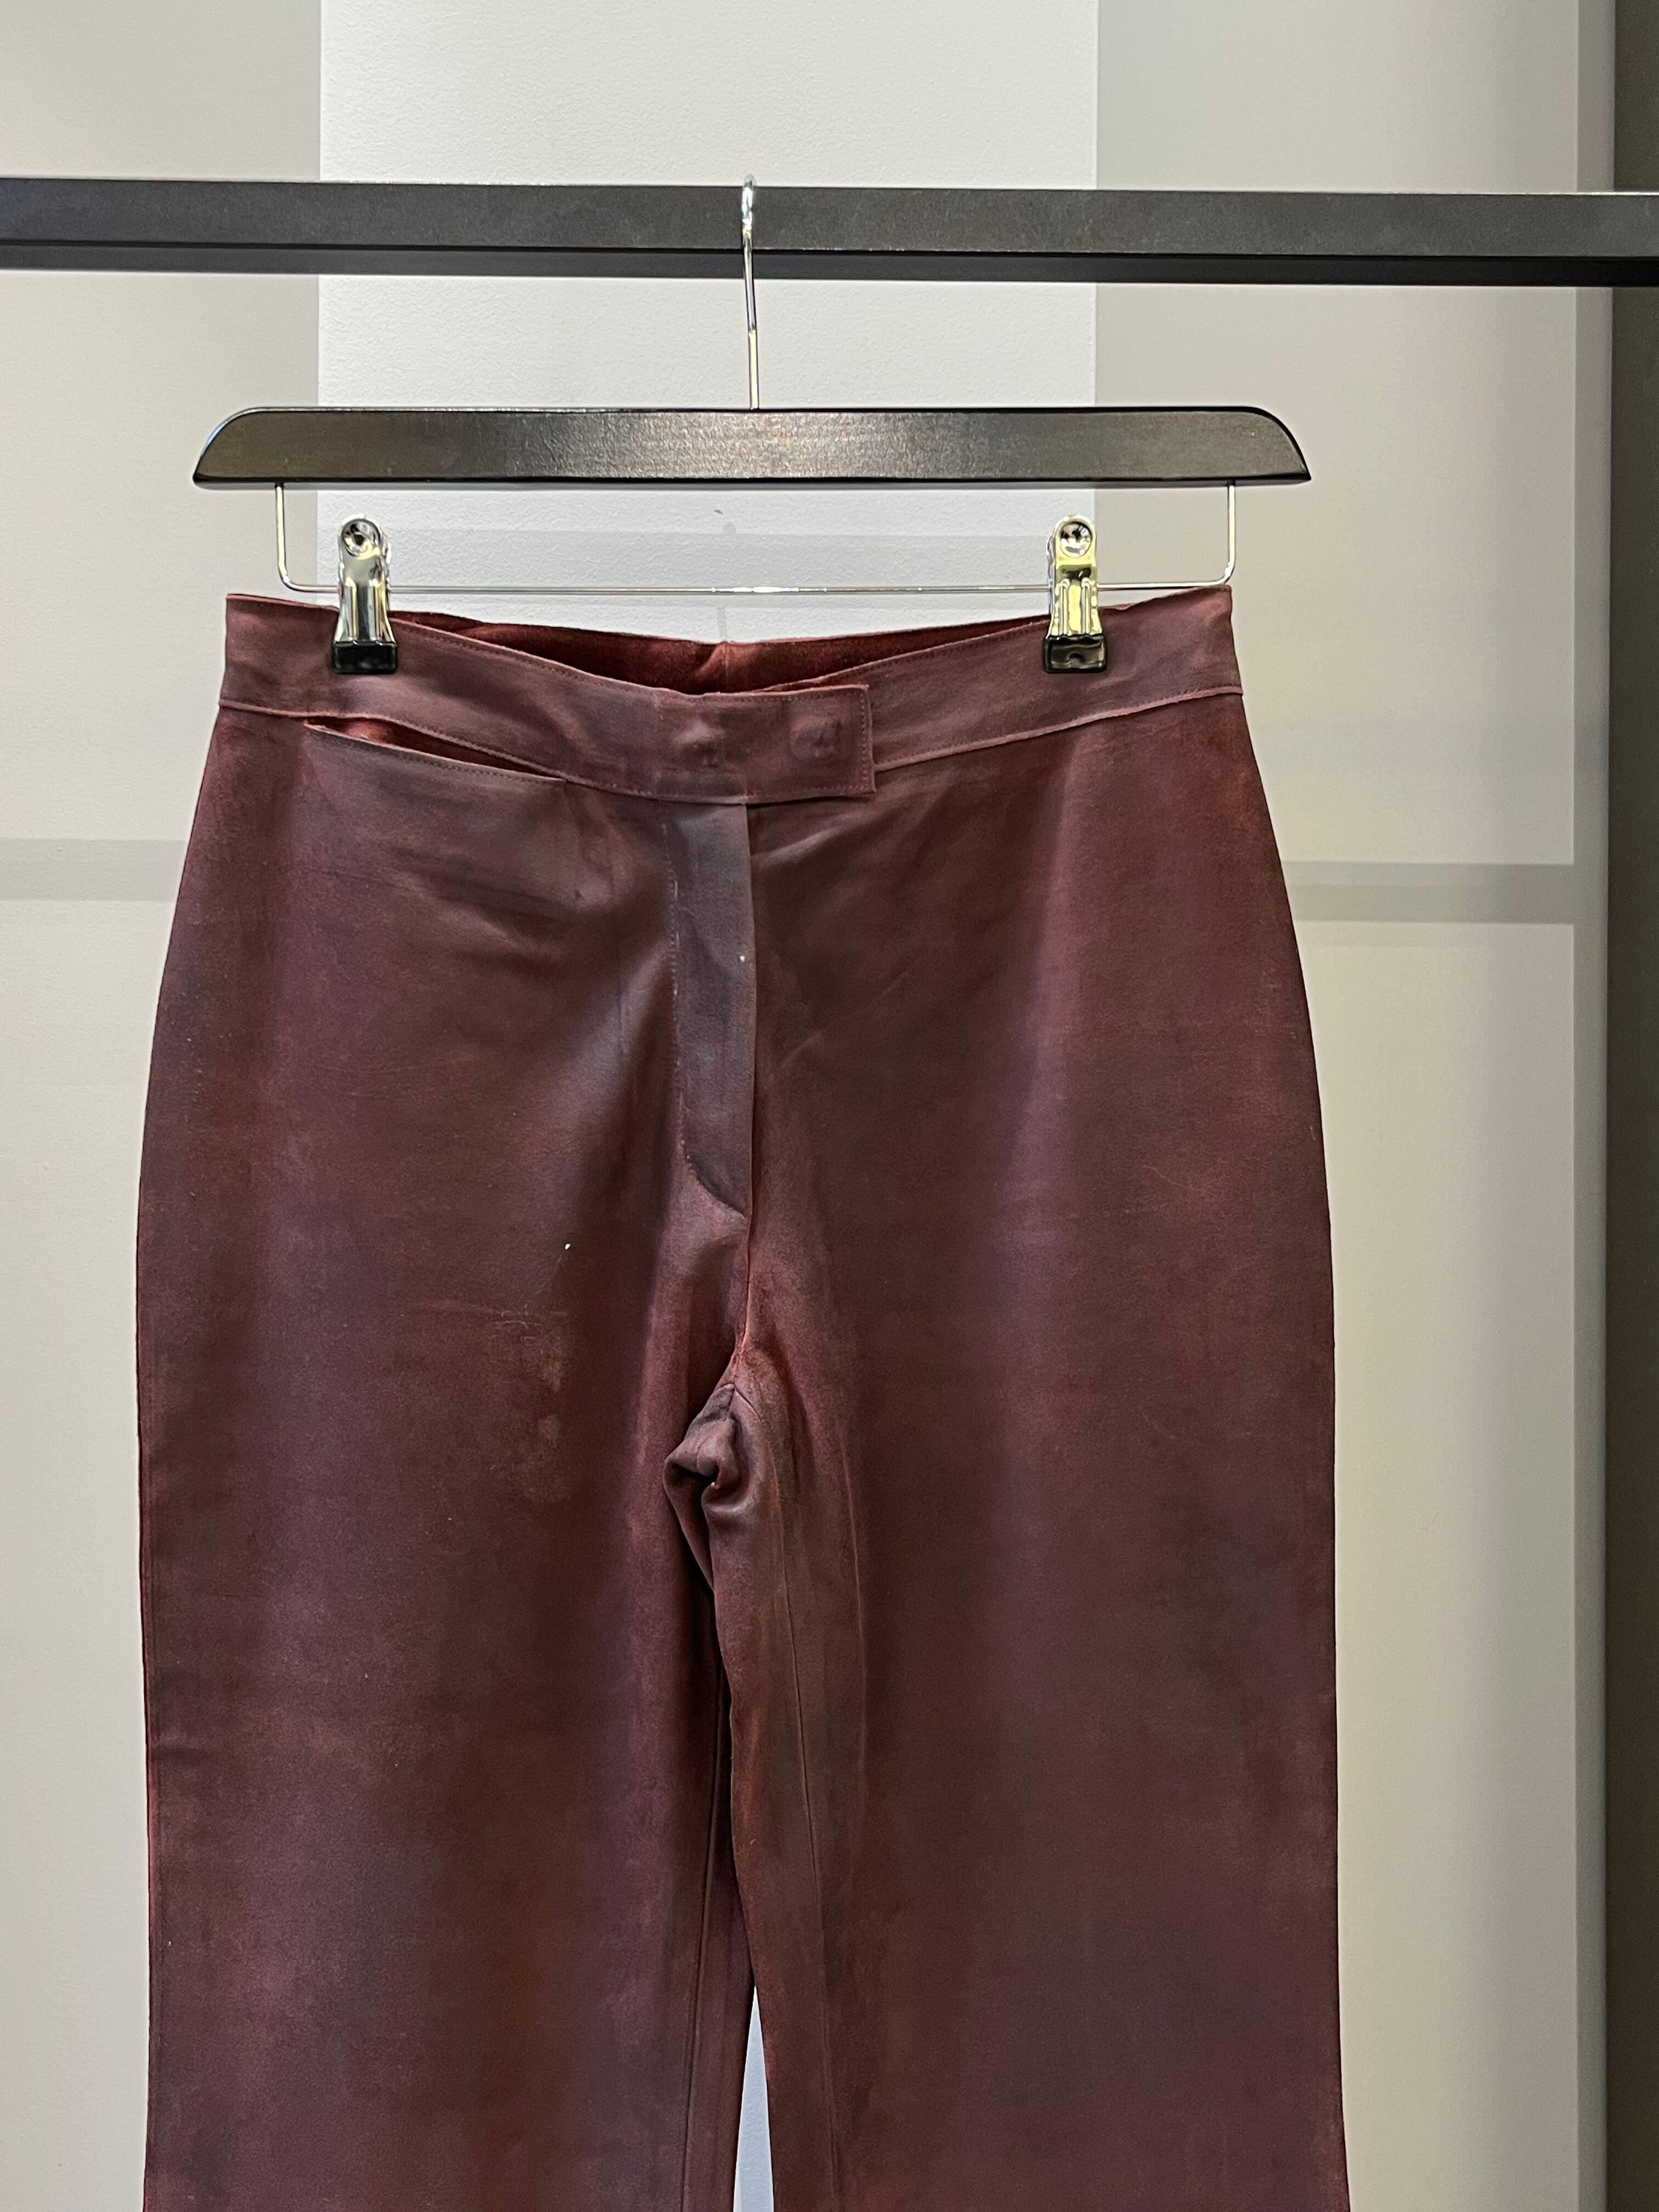 Miu Miu
Pantalon en cuir marron
Taille IT 40

Magnifique pantalon en cuir marron Miu Miu en taille IT 40. En très bon état, fabriqué en Italie.

✈️ EU & US sera expédié avec UPS Expedited qui prend généralement 2-4 jours ouvrables pour arriver. Les